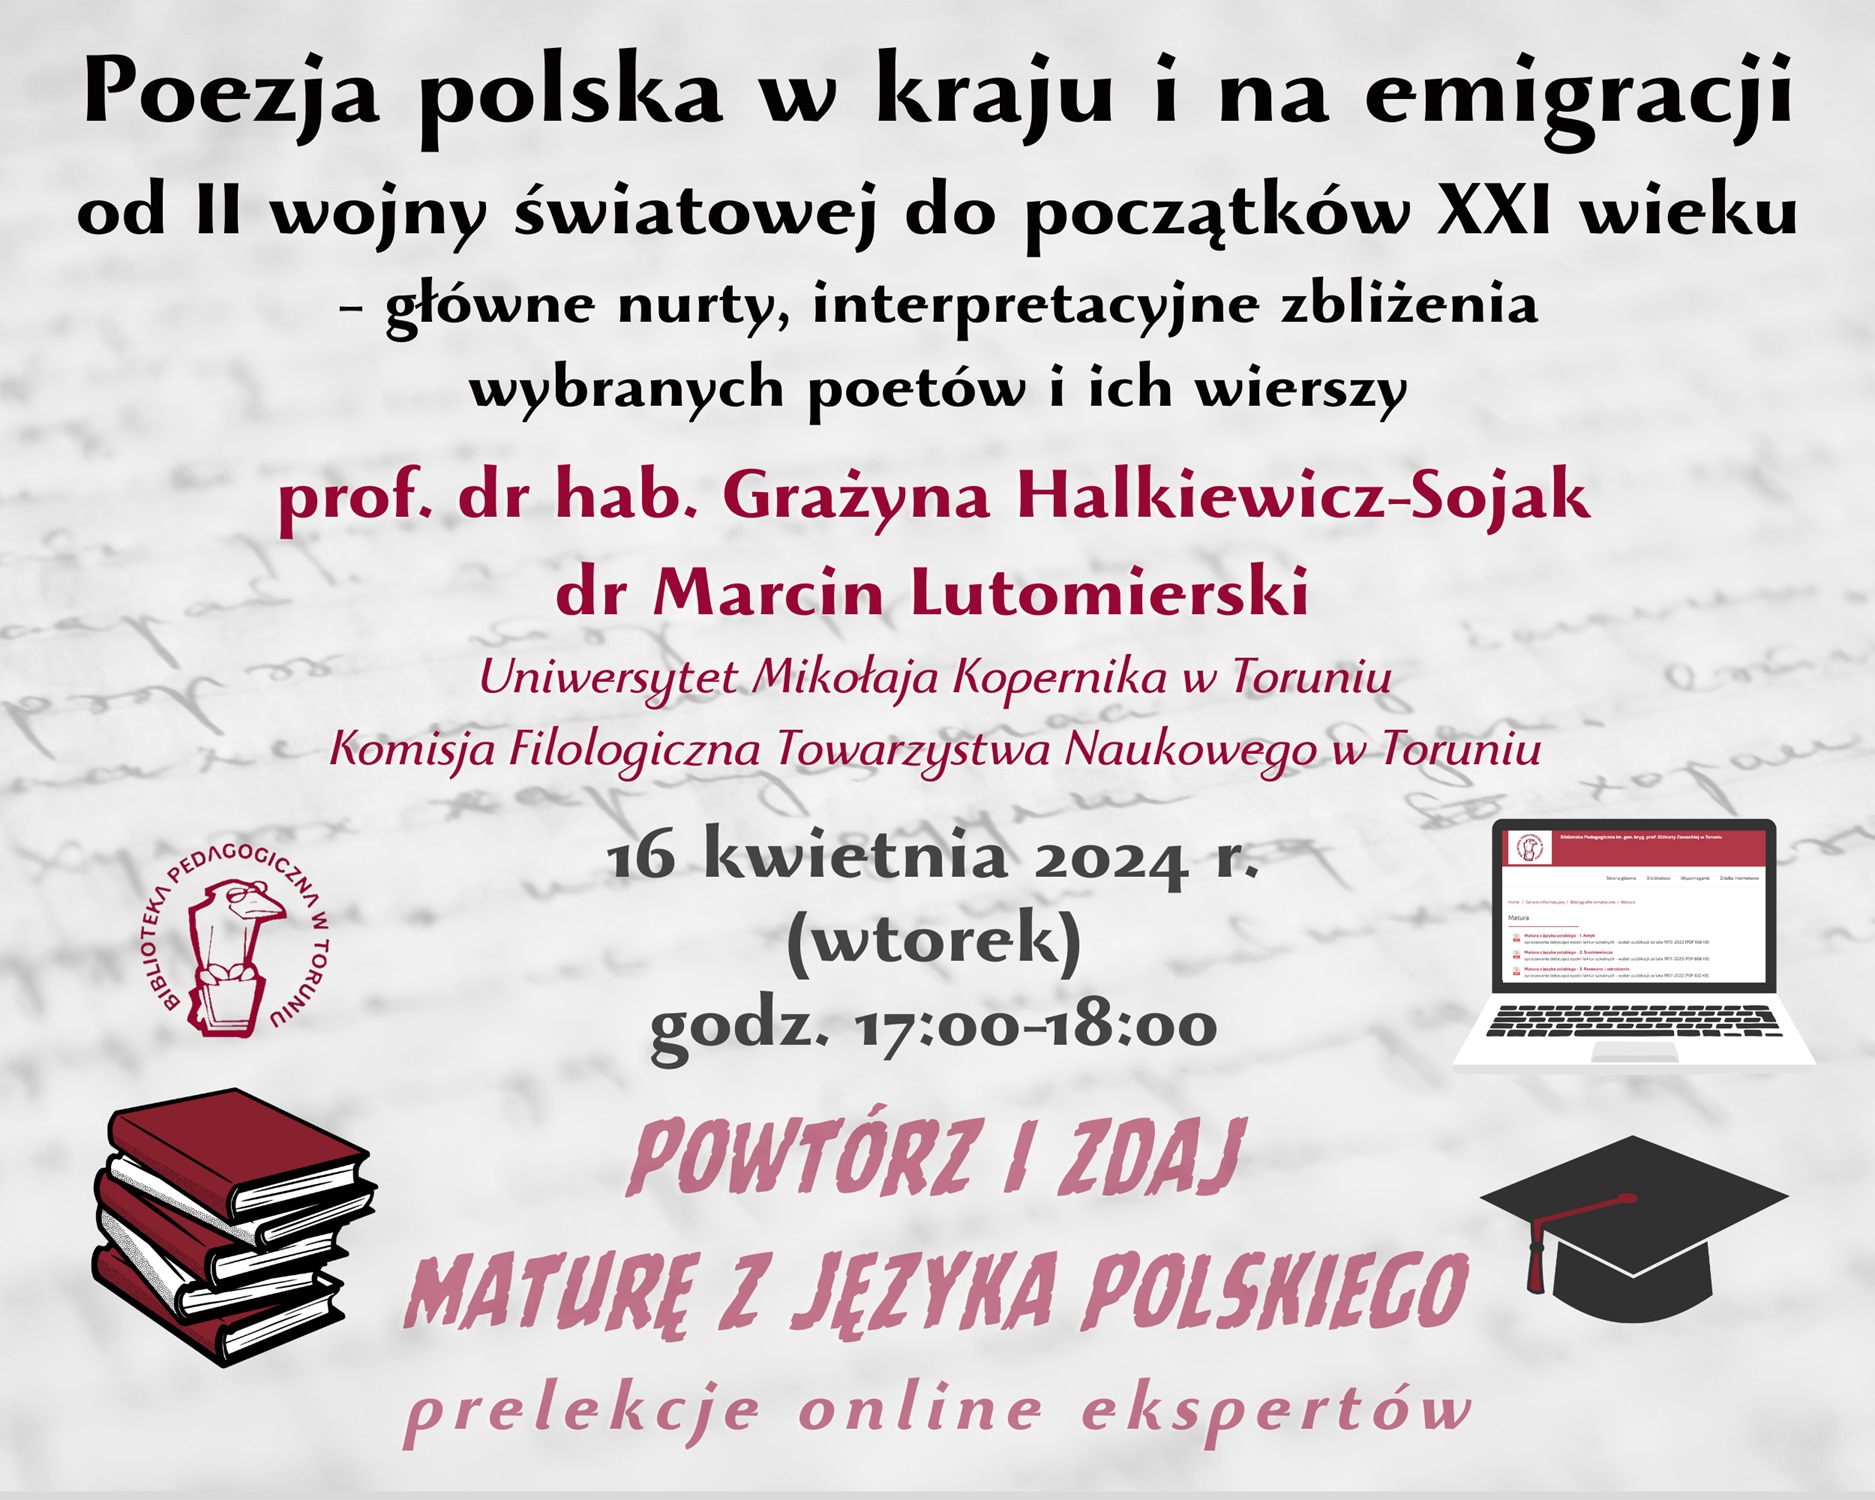 Grafika zapraszająca do udziału w wykładzie online. W lewym górnym rogu logo Biblioteki Pedagogicznej w Toruniu: ptak w okularach, siedzący na książce, w prawym górnym rogu laptop, w lewym dolnym stos książek a w prawym dolnym czarna czapka absolwencka.